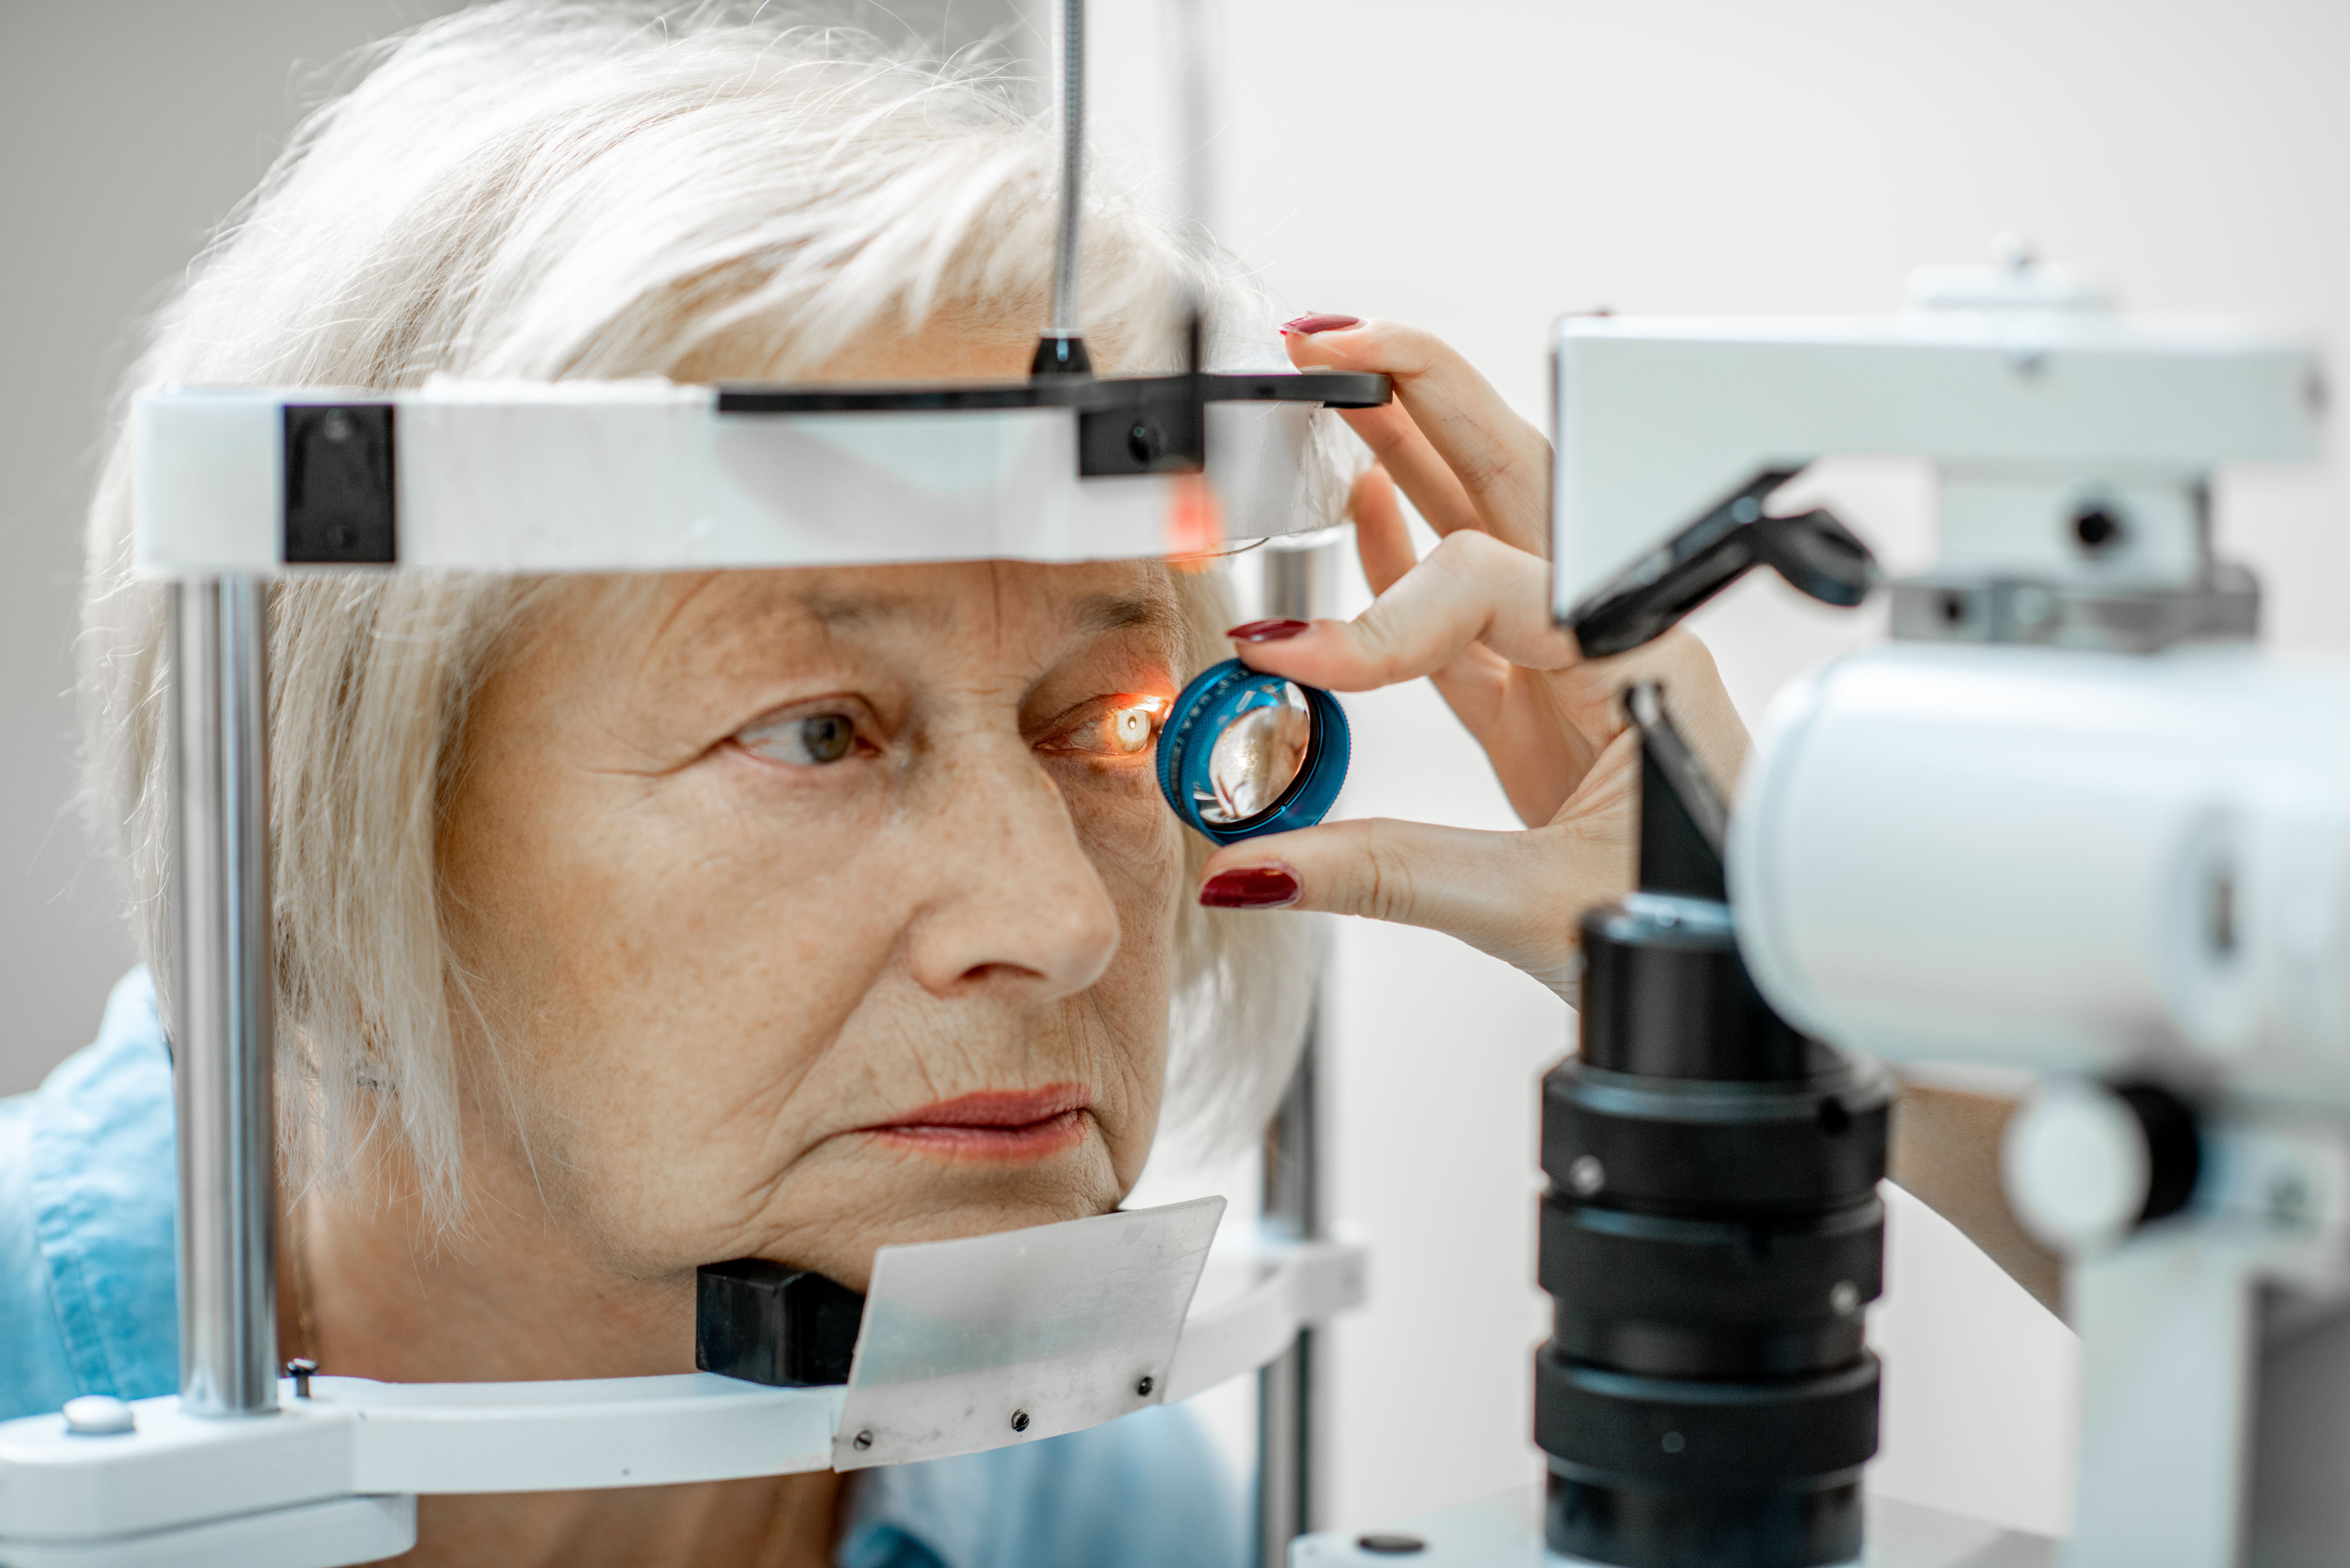 Sintomas do glaucoma: é possível diagnosticar em consultas de rotina?